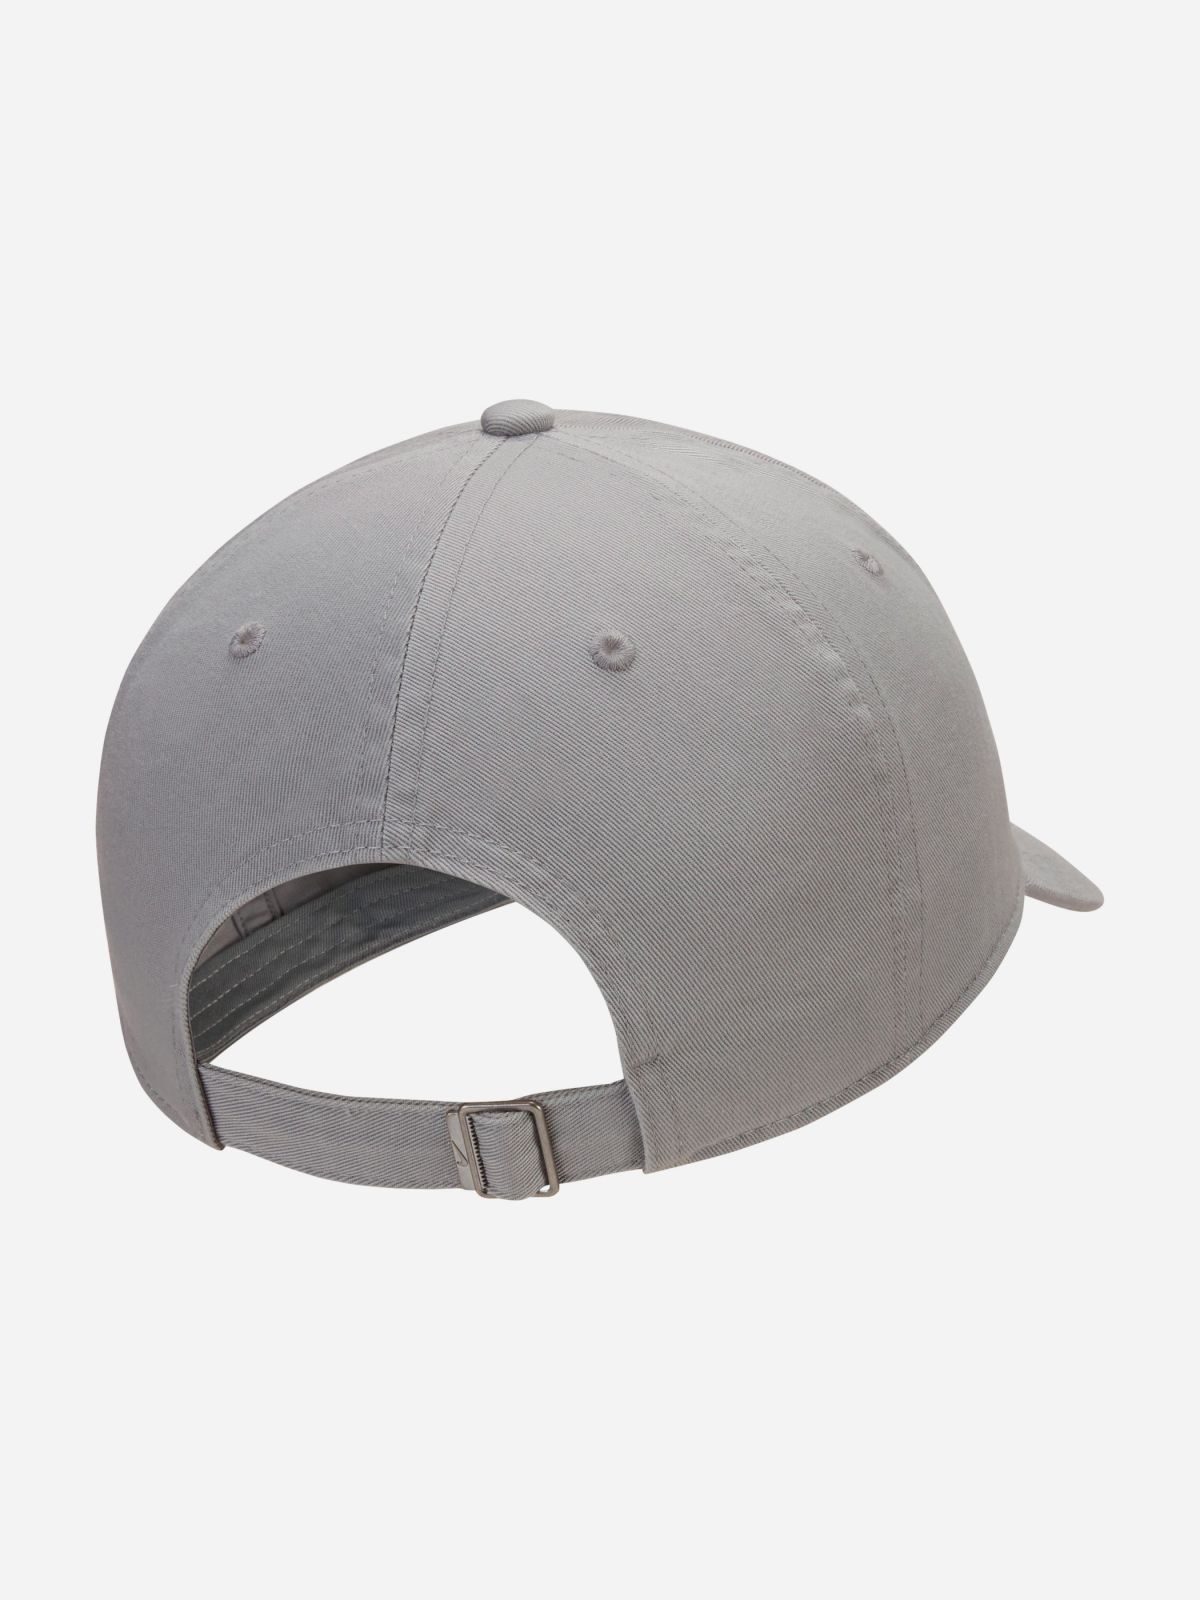  כובע מצחיה עם לוגו Heritage86 Futura Washed / גברים של NIKE